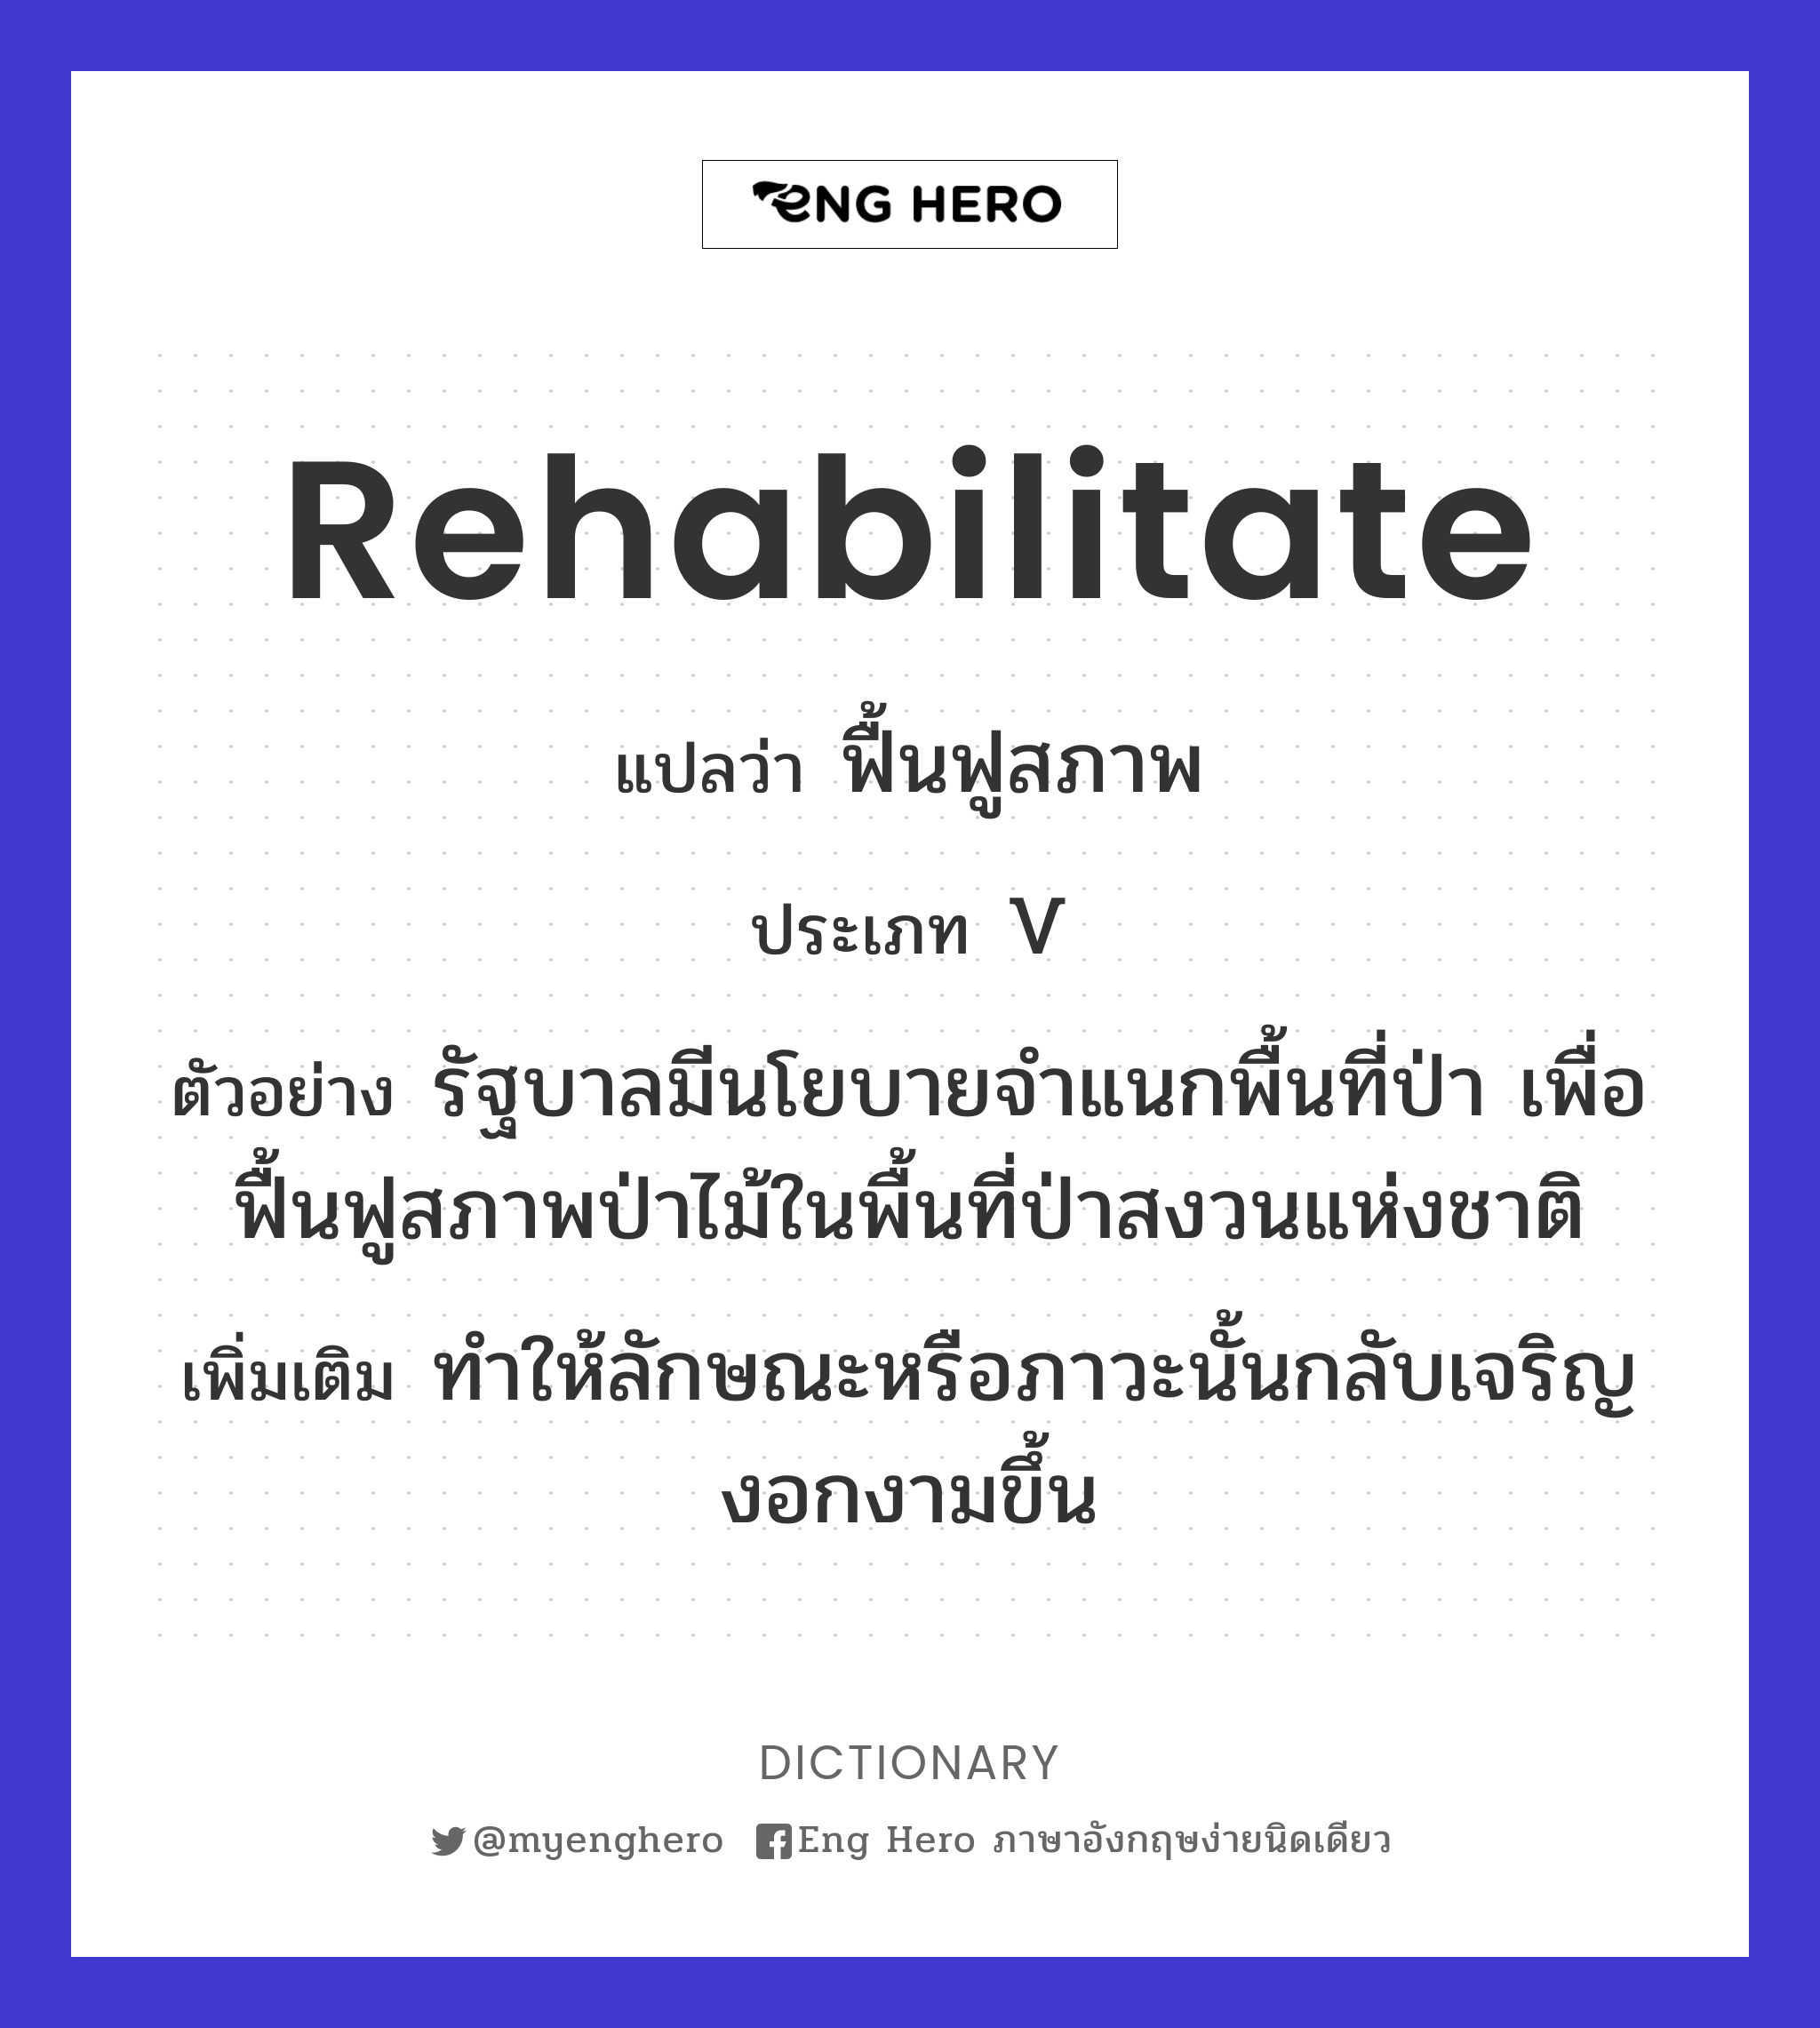 rehabilitate